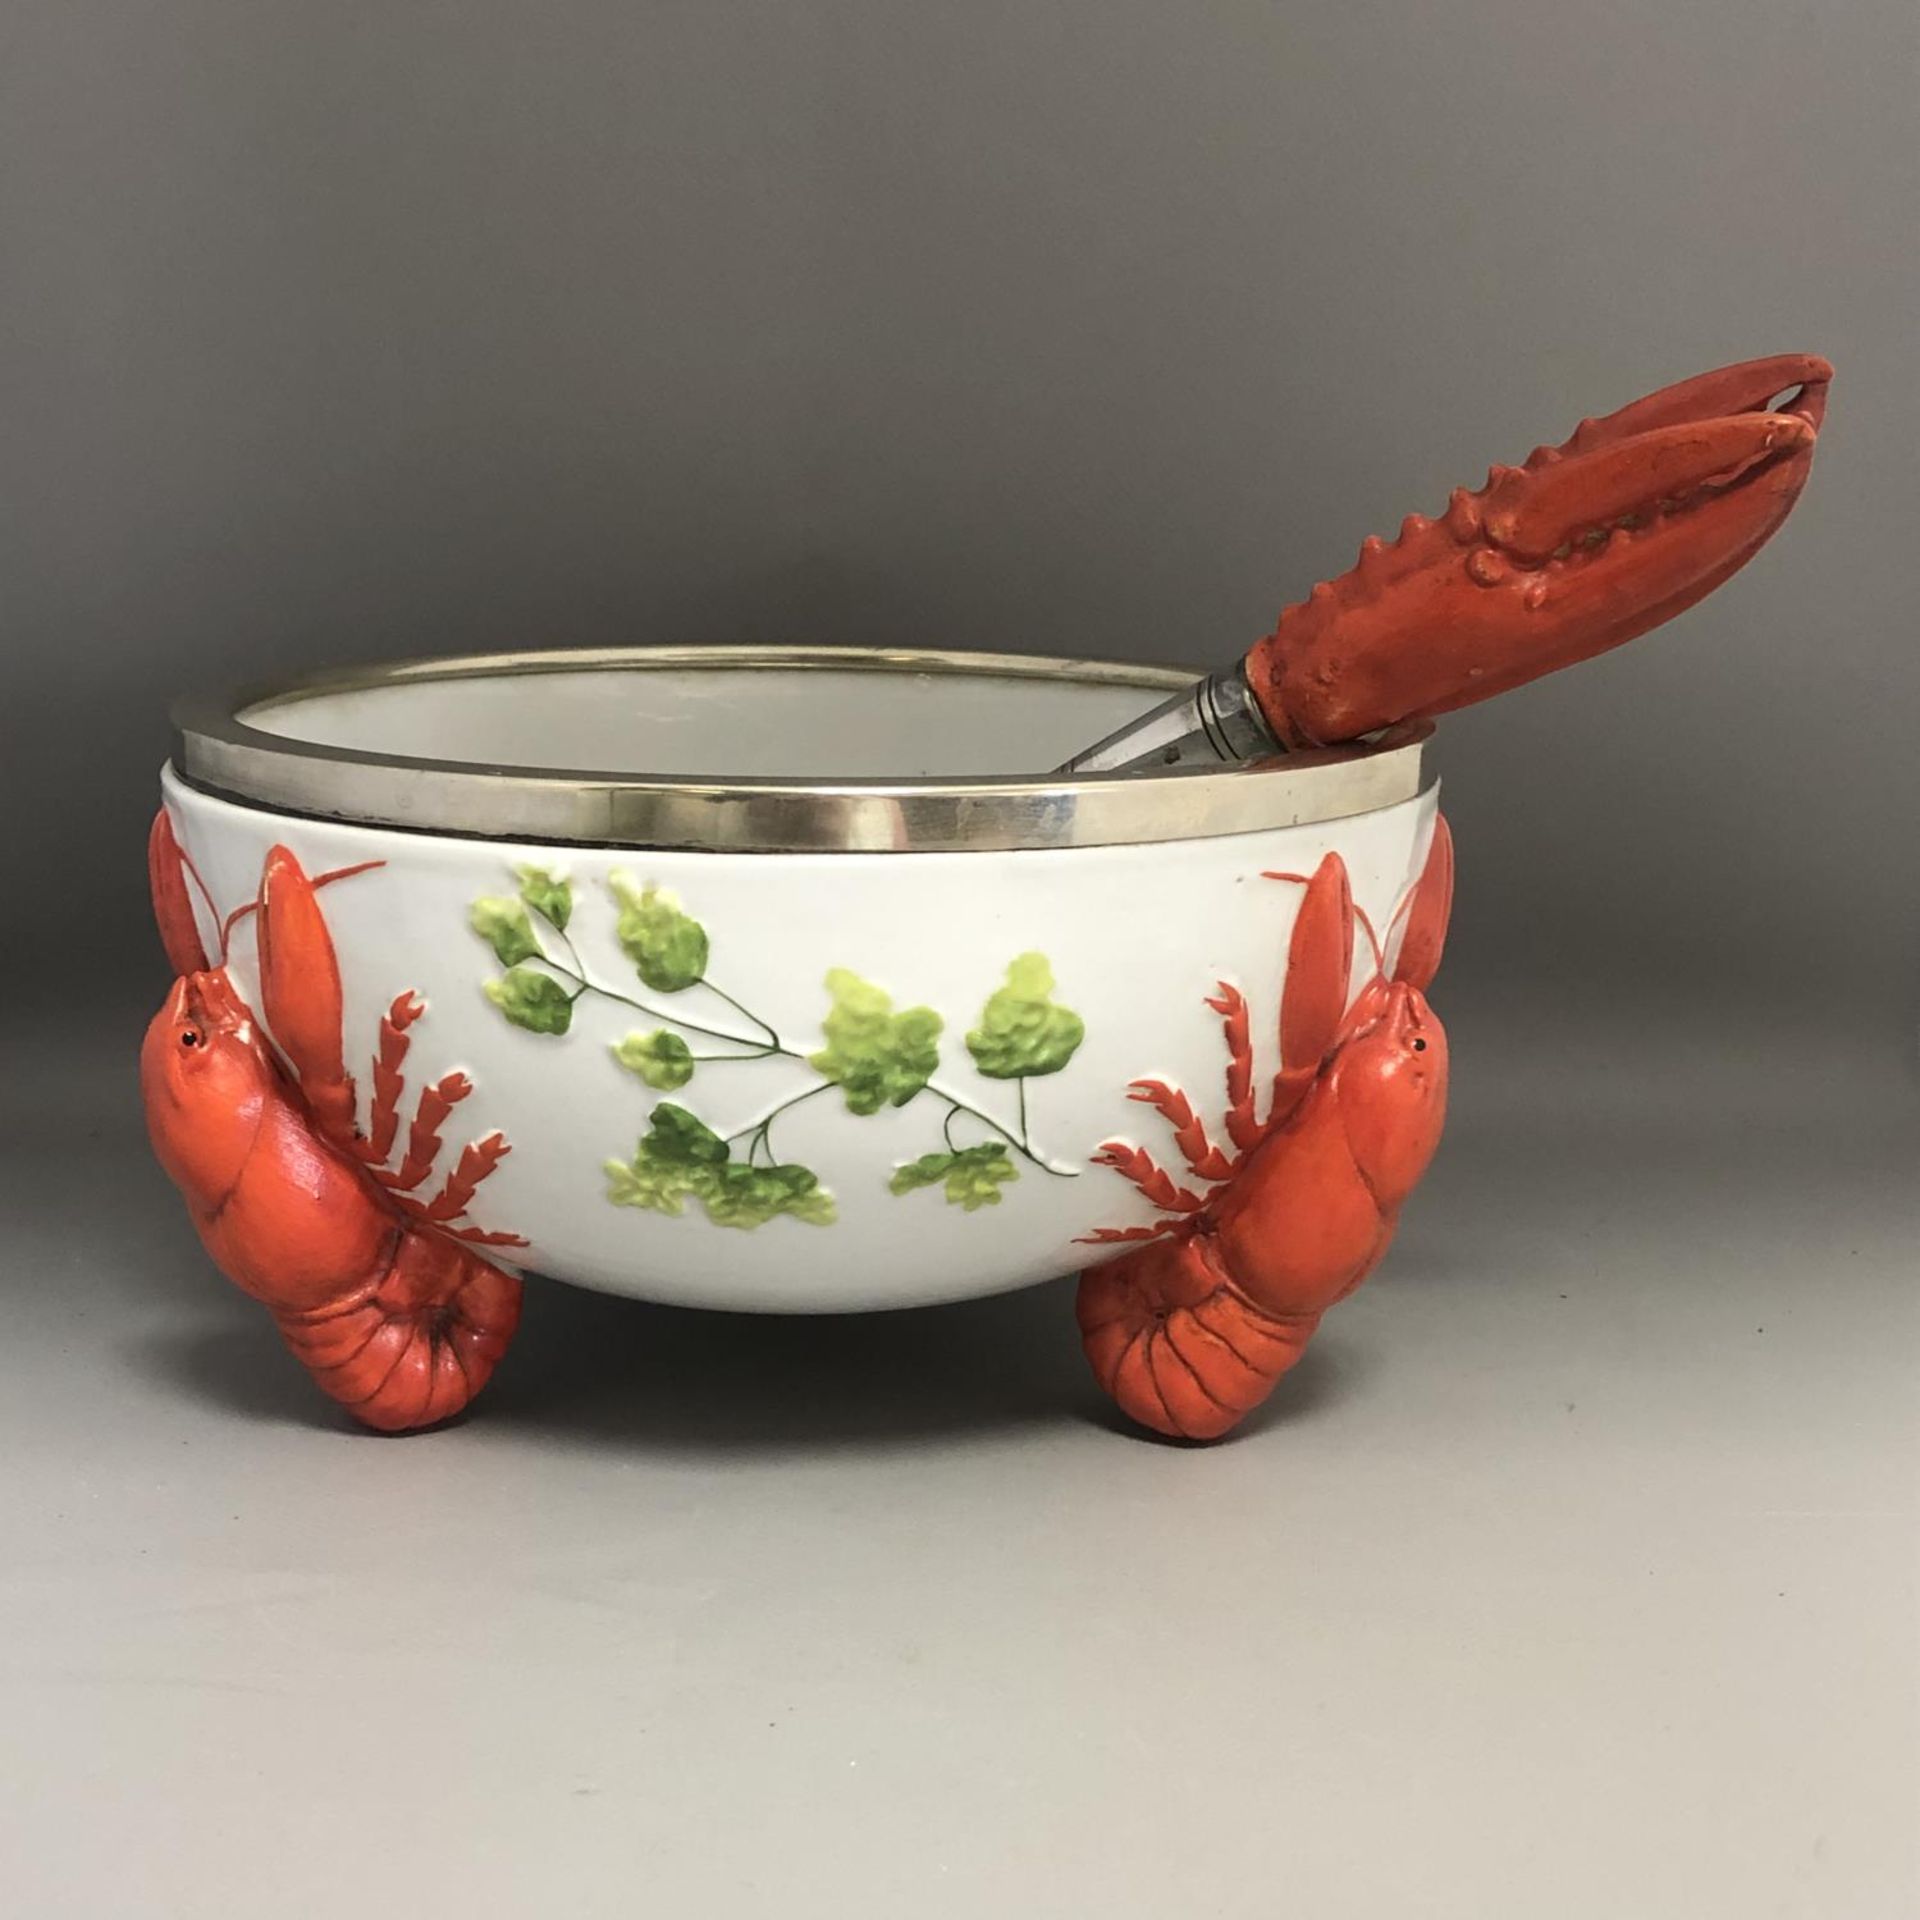 An Art Nouveau / Jugendstil WMF EPNS Rimmed Lobster Bowl with Claw Servers - Image 2 of 8